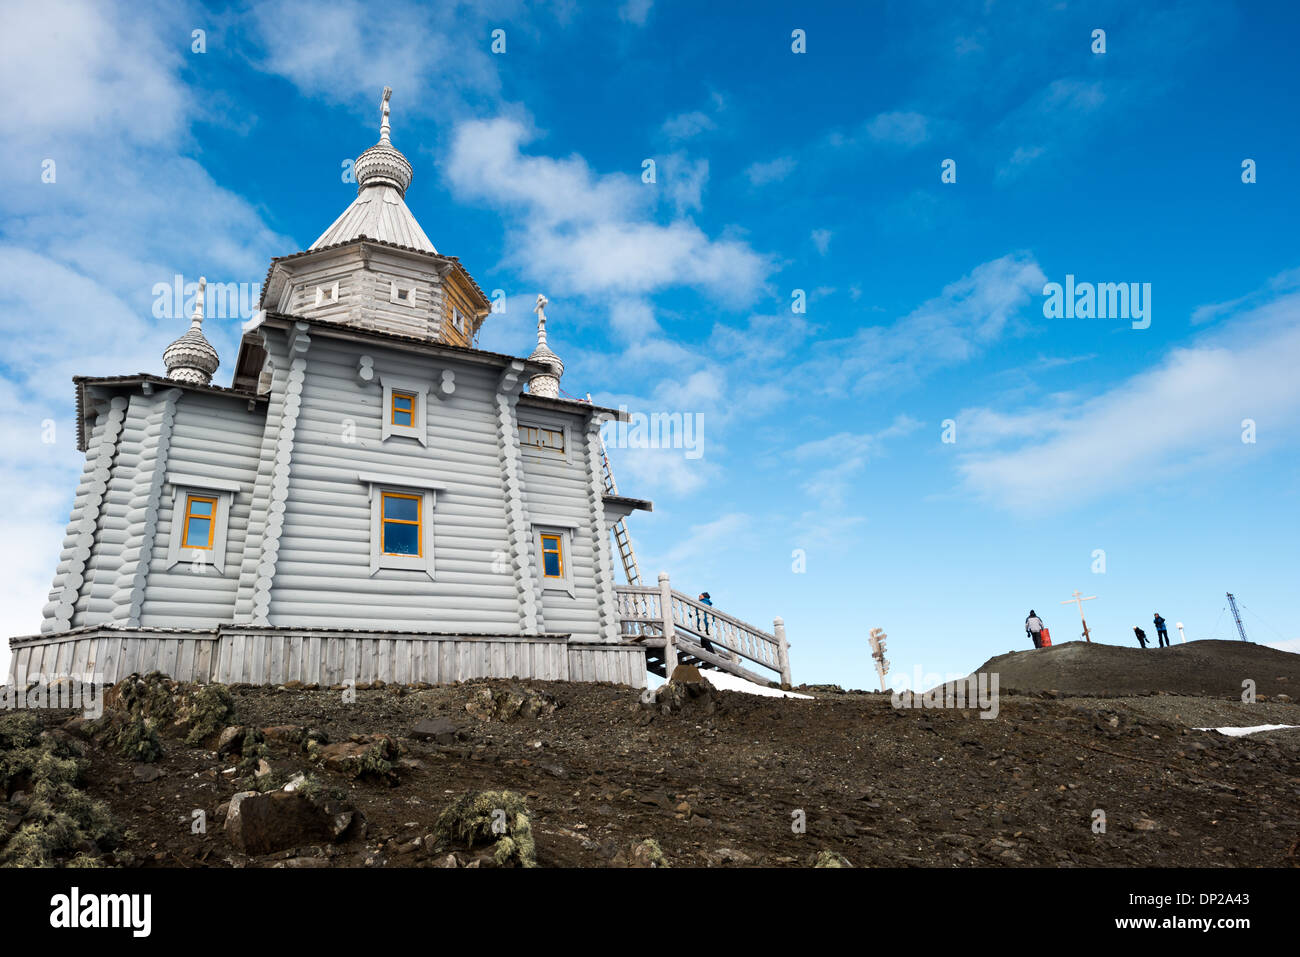 Antarktis - Trinity Church ist eine russisch-orthodoxe Kirche auf King George Island, South Shetland Inseln. Es befindet sich auf einer kleinen felsigen Anhöhe in der Nähe von Russischen Bellingshausen Station Forschungsbasis liegt. Der sibirischen Zeder konstruiert und Kiefer mit speziellen Verstärkungen gegen die rauen Wetter der Antarktis, Trinity Kirche wurde 2004 geweiht und ist die südlichste der Östlichen Orthodoxen Kirche in der Welt. Stockfoto